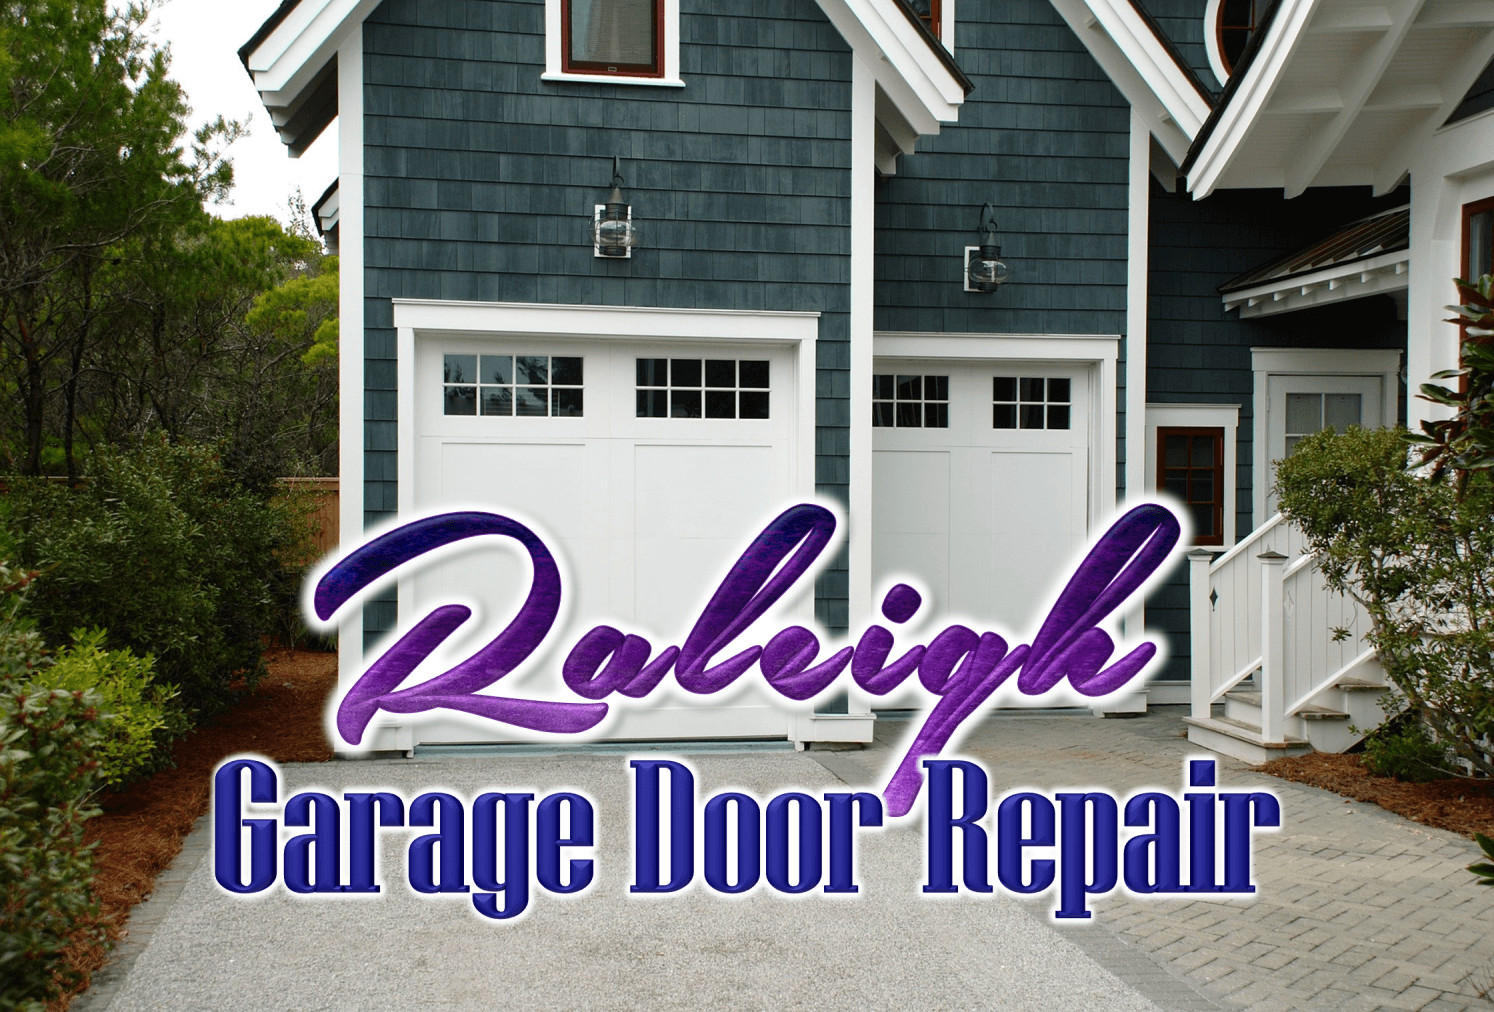 Garage Door Repair Raleigh
 The 6 Best Options for Garage Door Repair in Raleigh [2020]